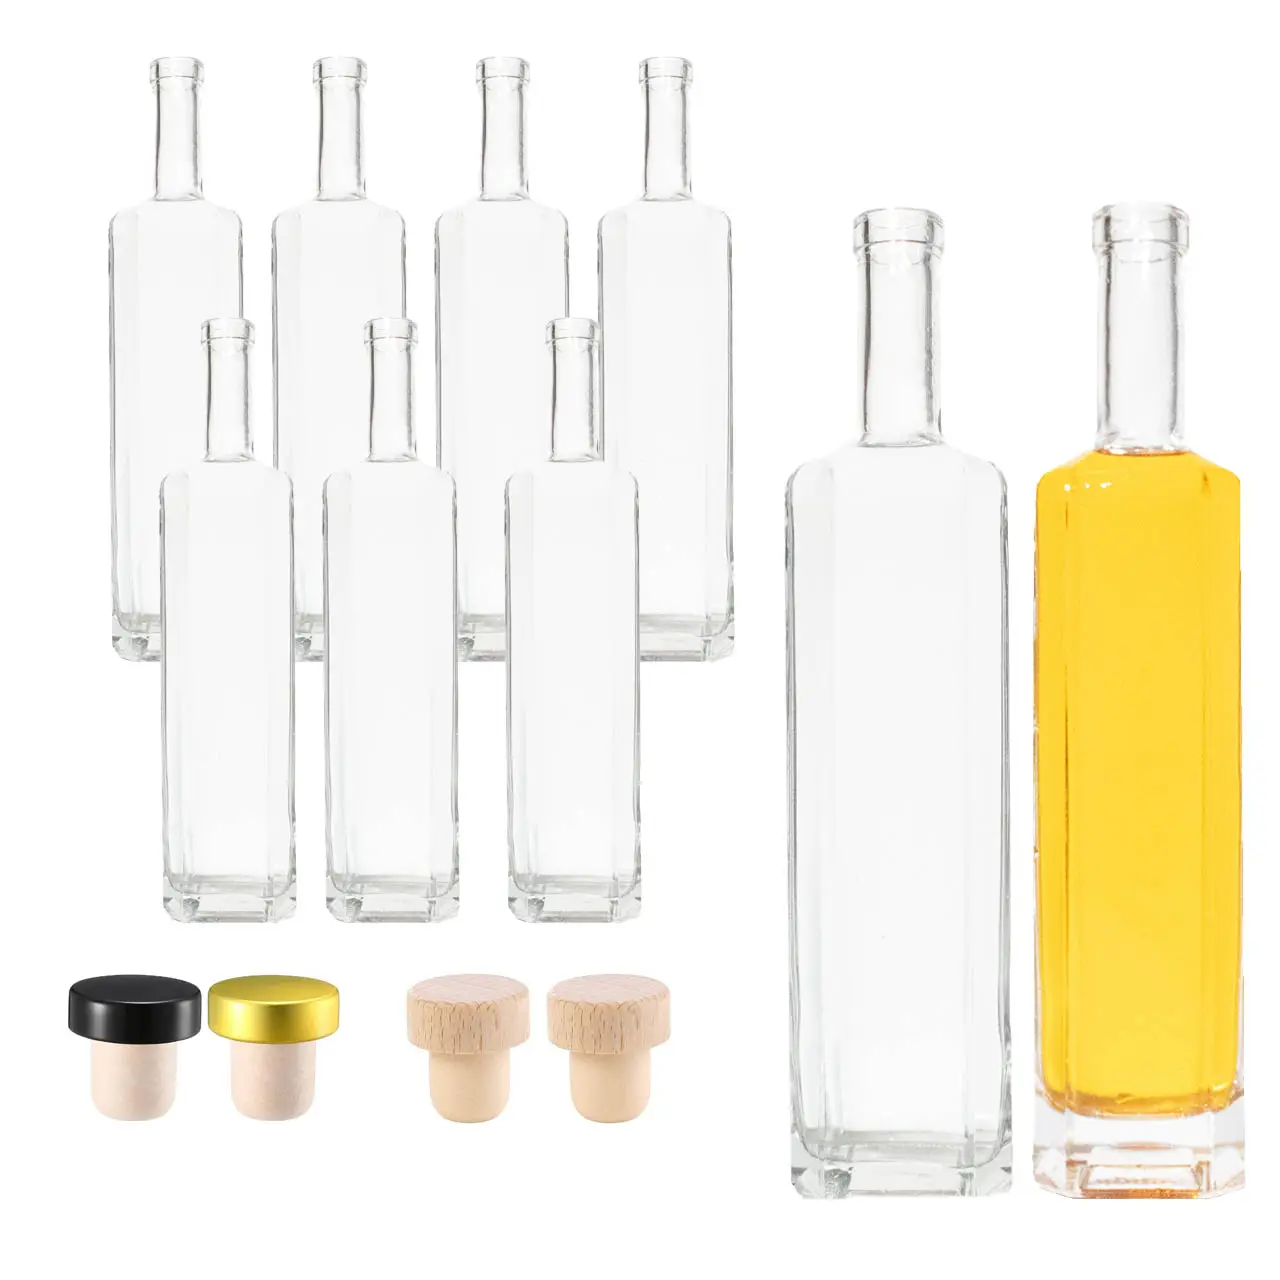 Düz alkol şişesi votka Tequila Rum viski cam likör şişesi özel 200ml 500ml 700ml 750ml cam likör şişesi